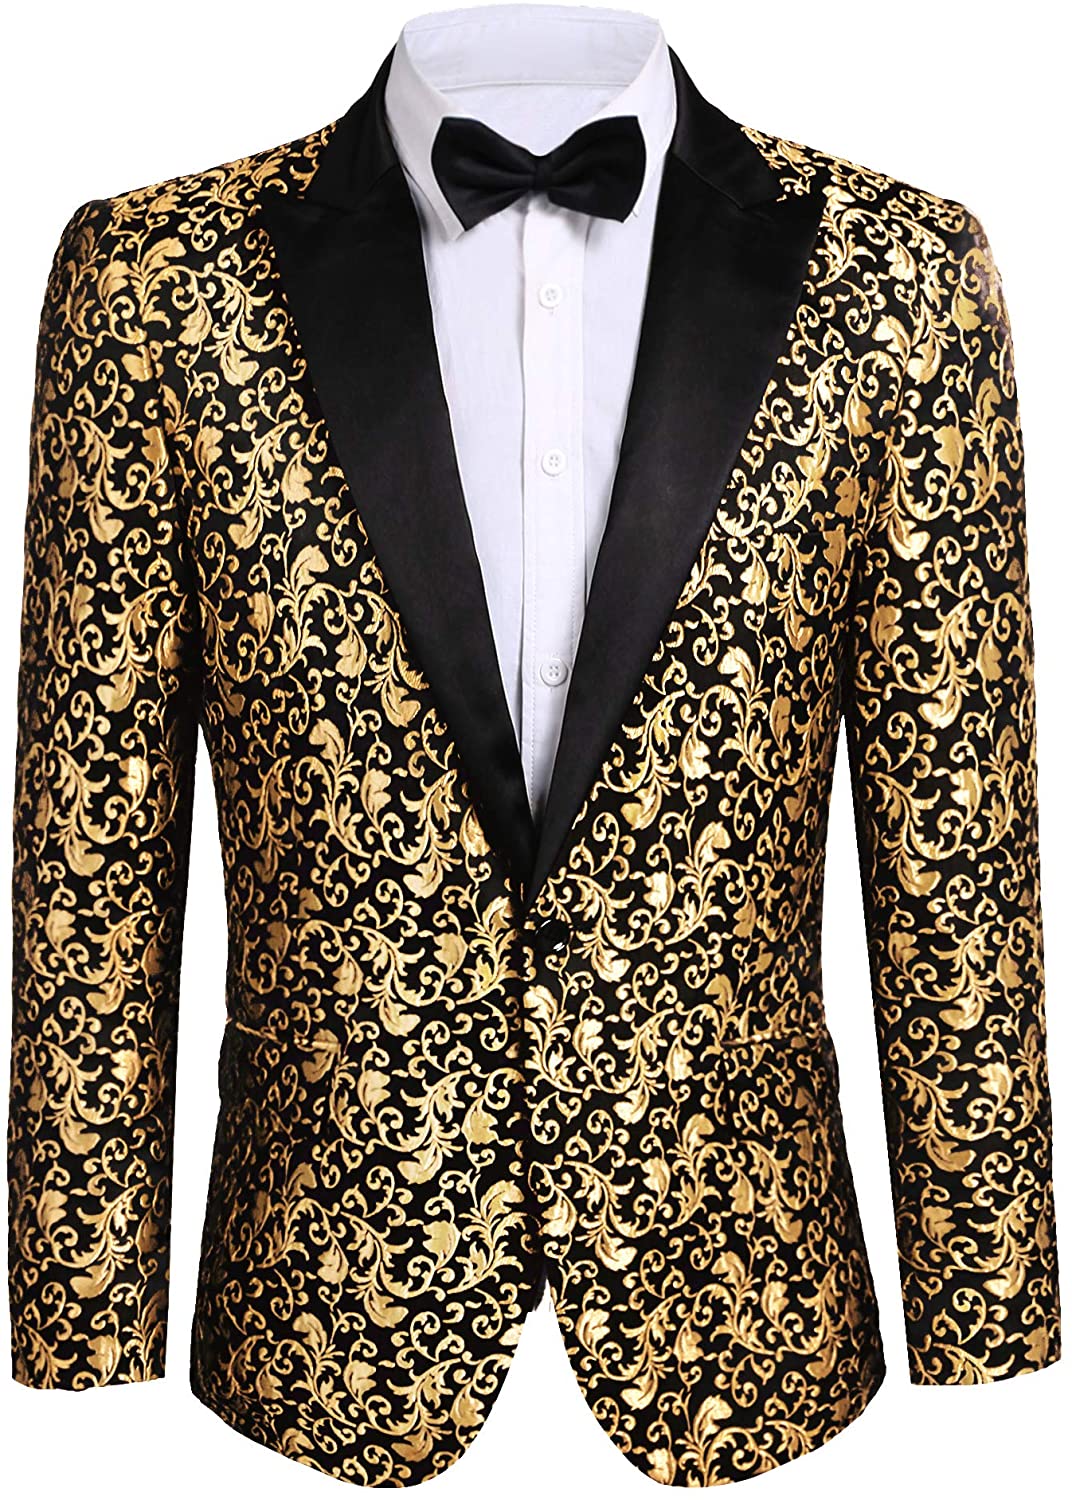 Clothing Suit Jackets JINIDU Men's Floral Party Dress Suit Stylish ...